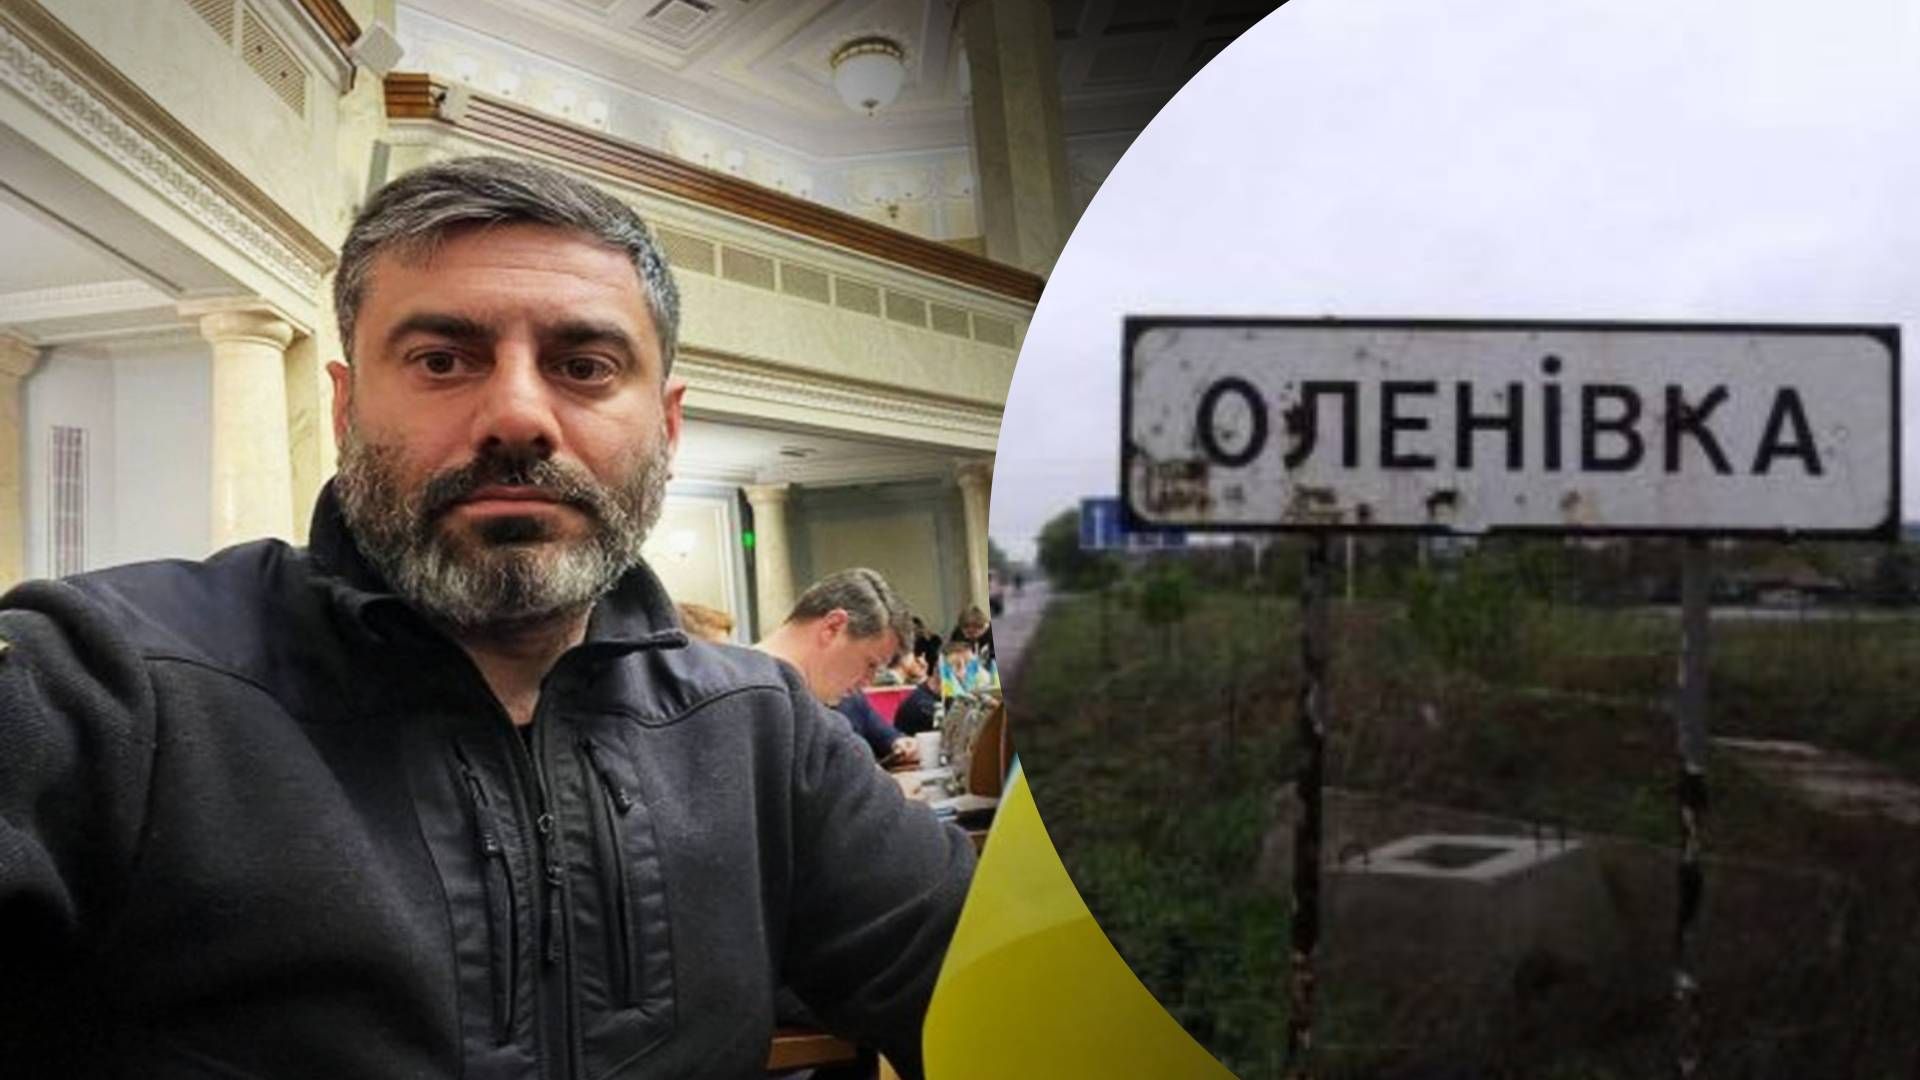 Сколько украинцев удерживают в Оленовке